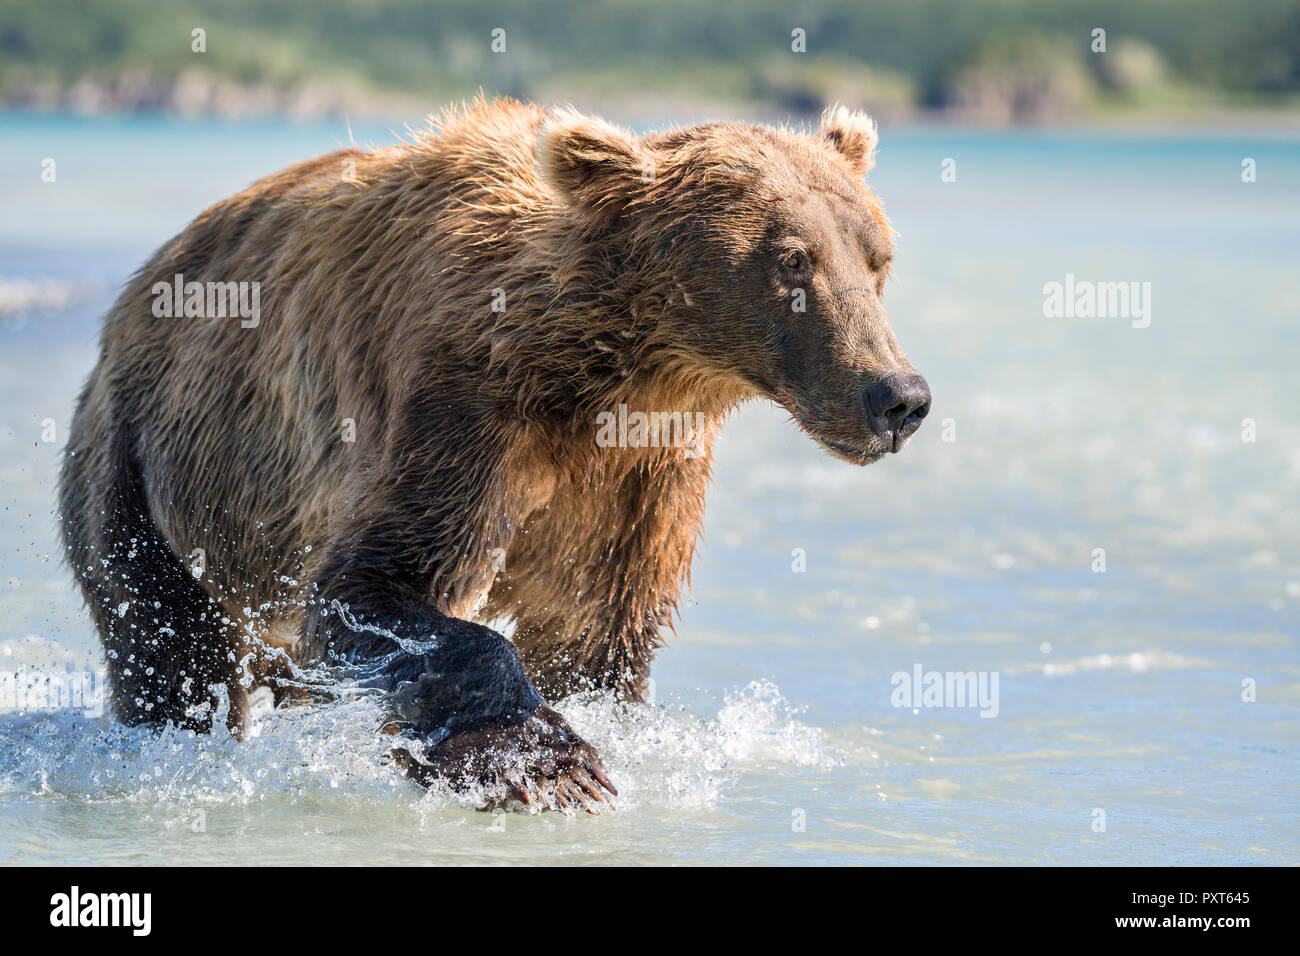 Brown bear (Ursus Arctos) runs in water, Katmai National Park, Alaska, USA Stock Photo